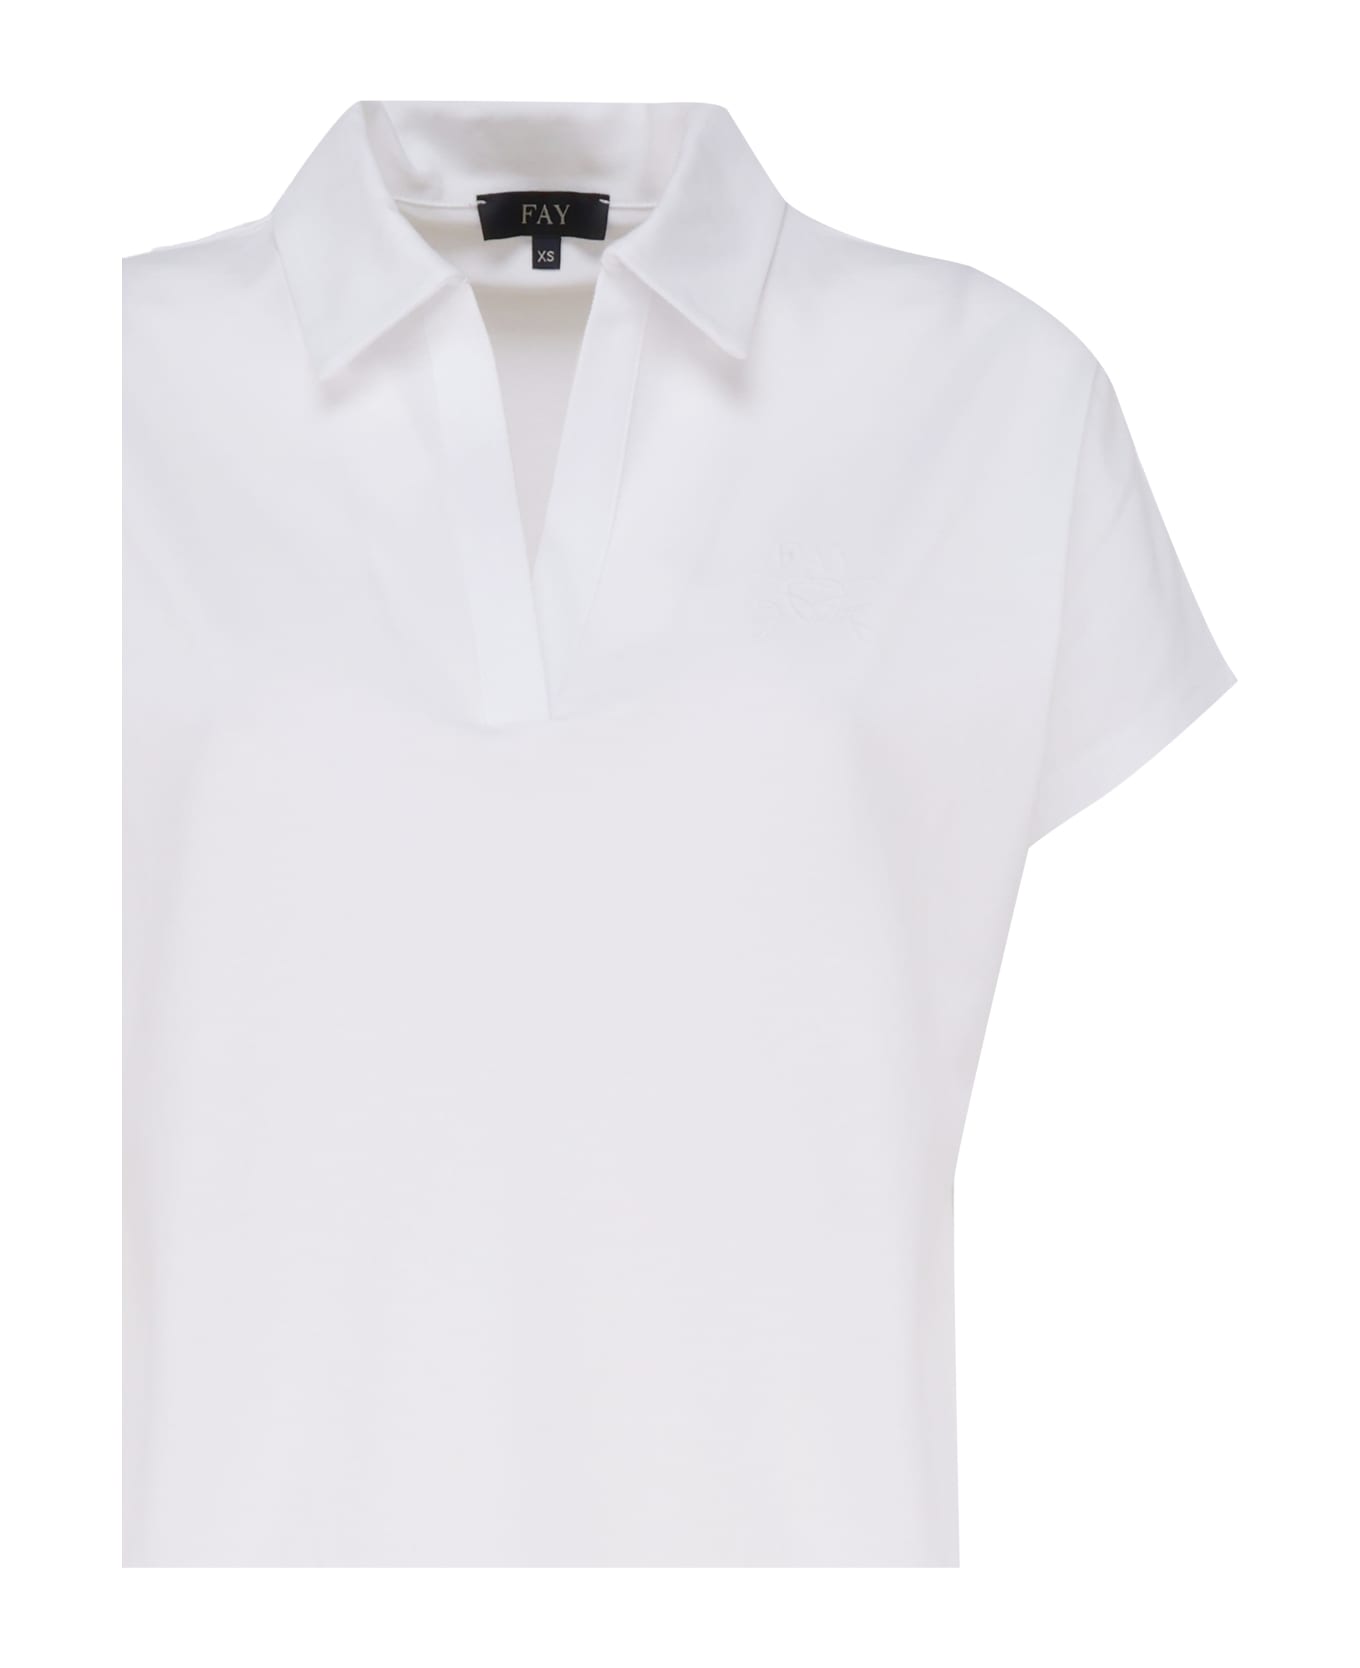 Fay Short Sleeve Polo Shirt - White